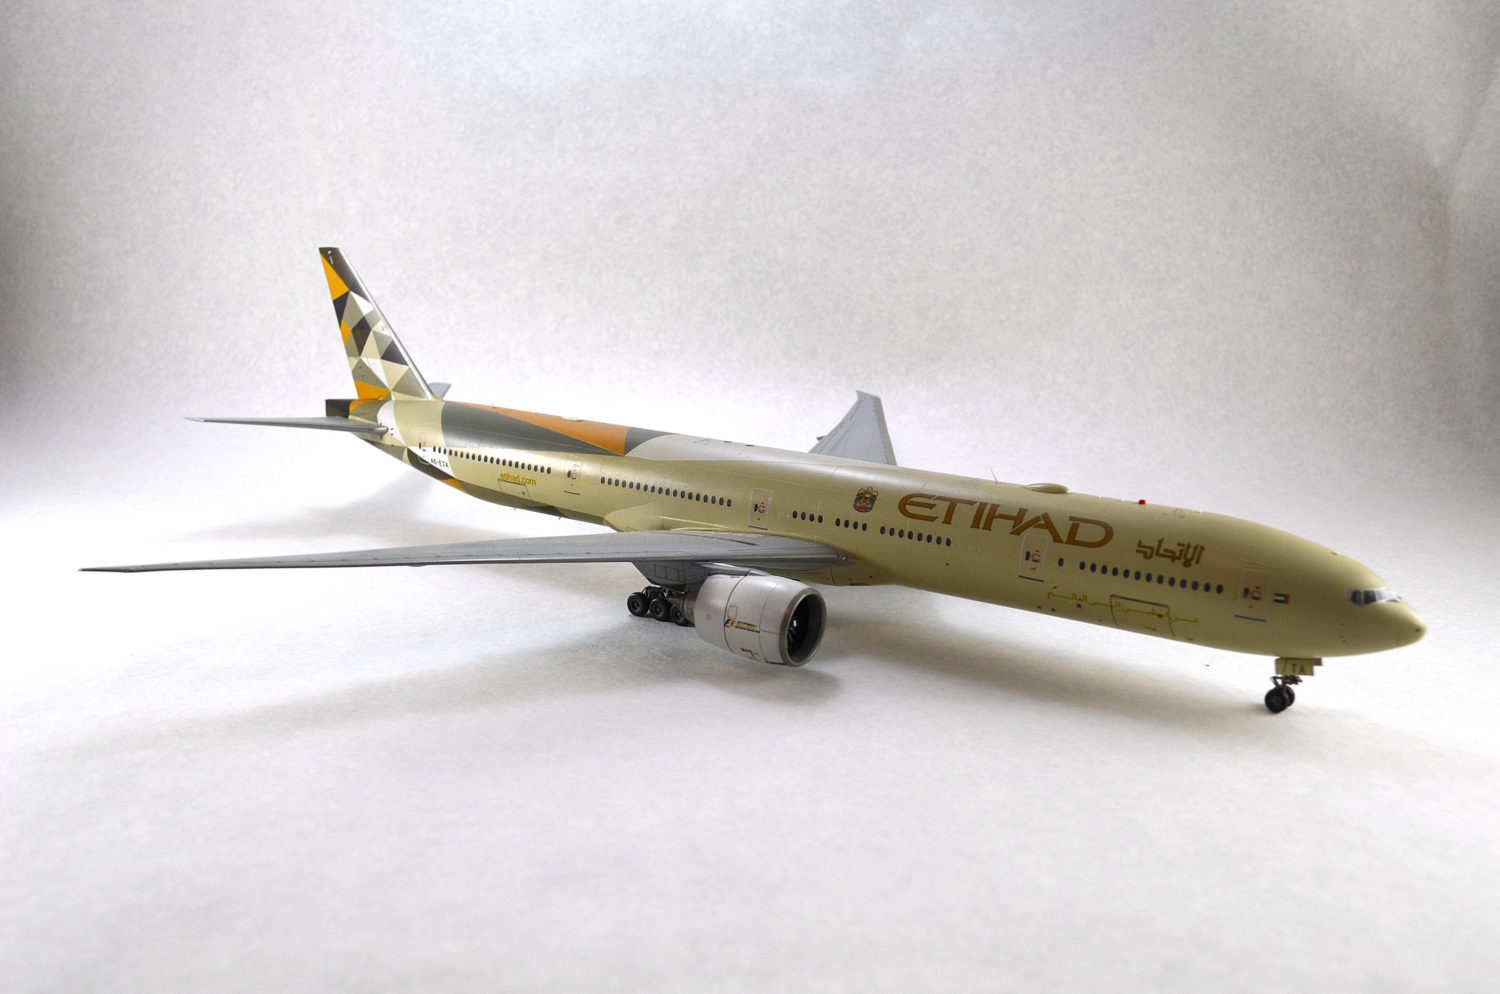 Модель самолета Boeing 777-300ER Etihad Airlines. Вид справа.